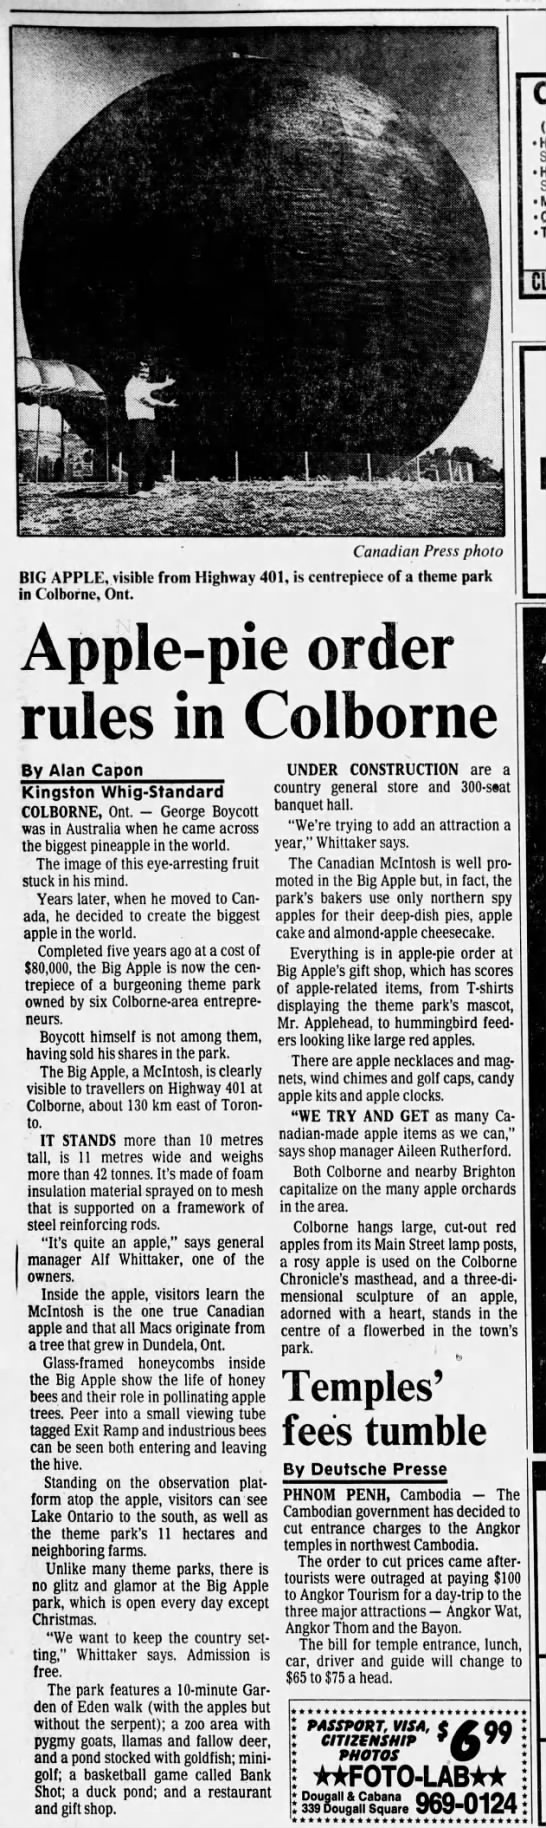 "Big Apple" of Colborne, Ontario (1992). - 